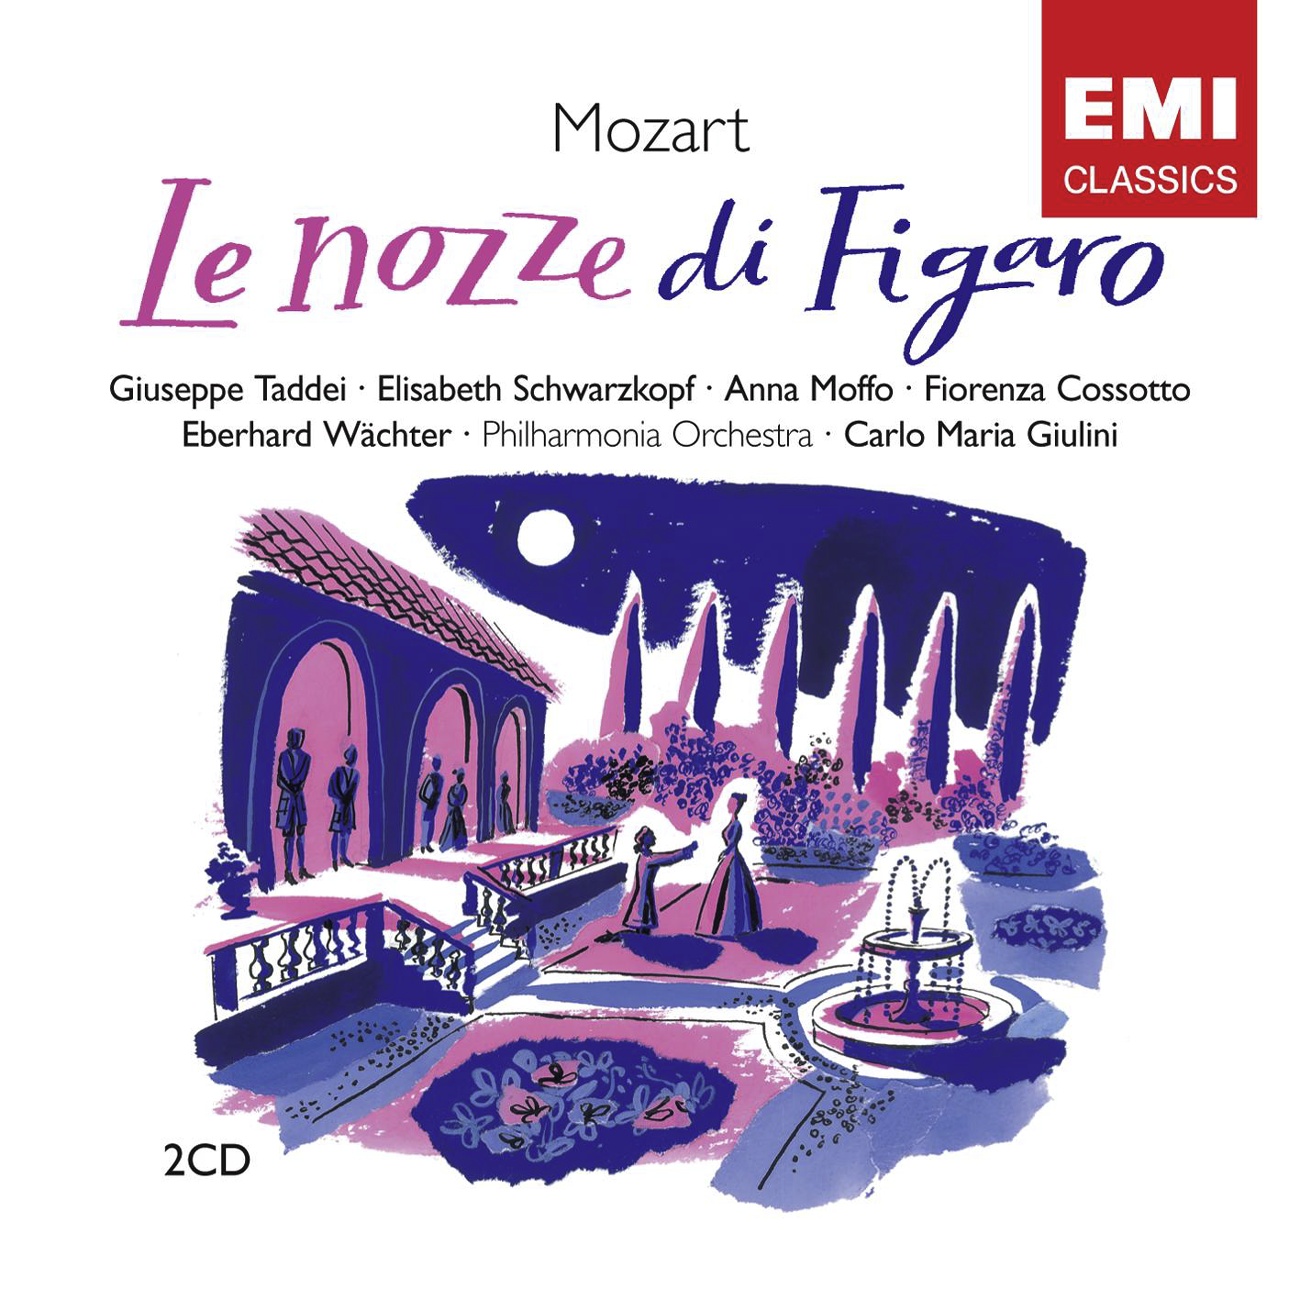 Le nozze di Figaro K492 (1989 Digital Remaster), Atto Primo: Terzetto:  Cosa sento! Tosto andate (Conte/Basilio/Susanna)